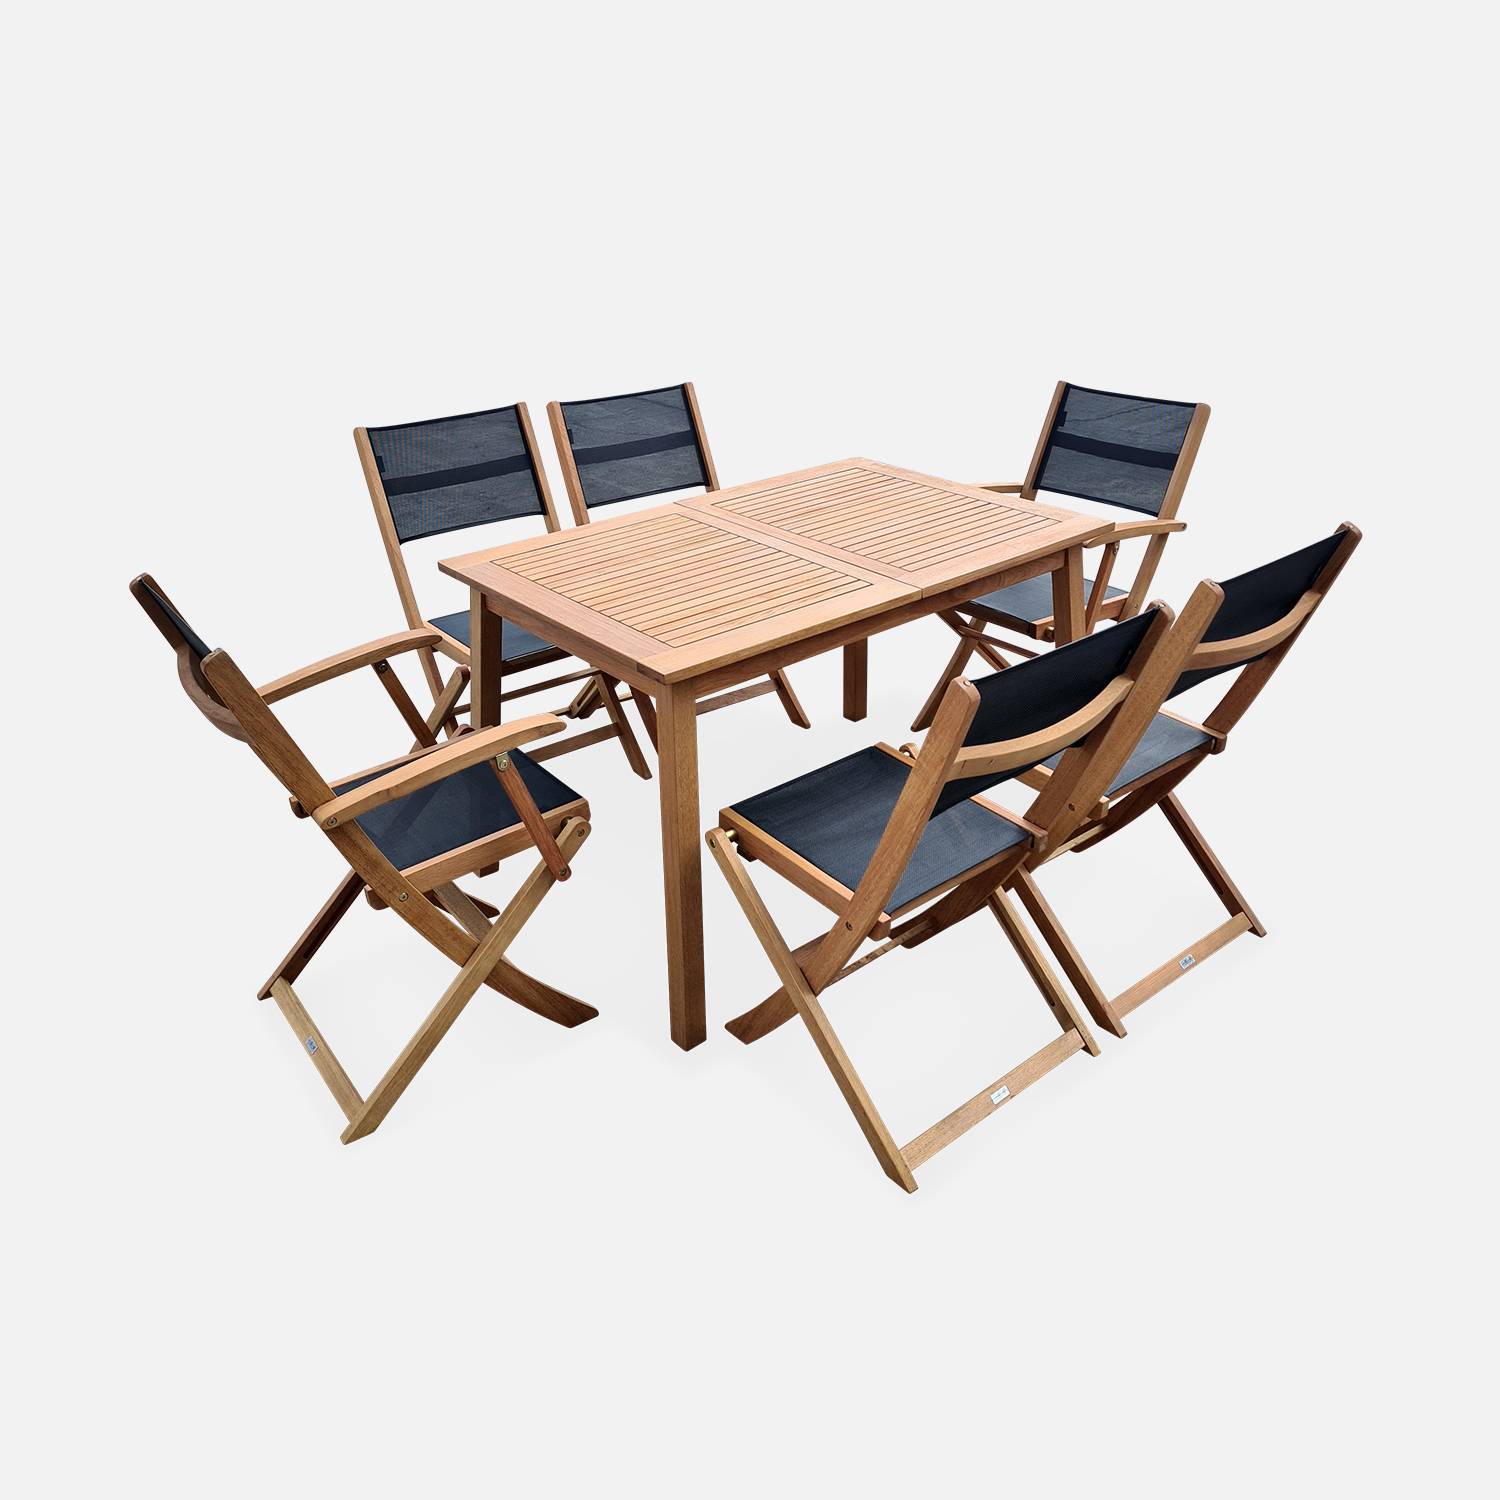 Ausziehbare Gartenmöbel aus Holz - Almeria - Tisch 120/180 cm mit Verlängerung, 2 Sesseln und 4 Stühlen aus geöltem FSC-Eukalyptusholz und schwarzem Textilene Photo4